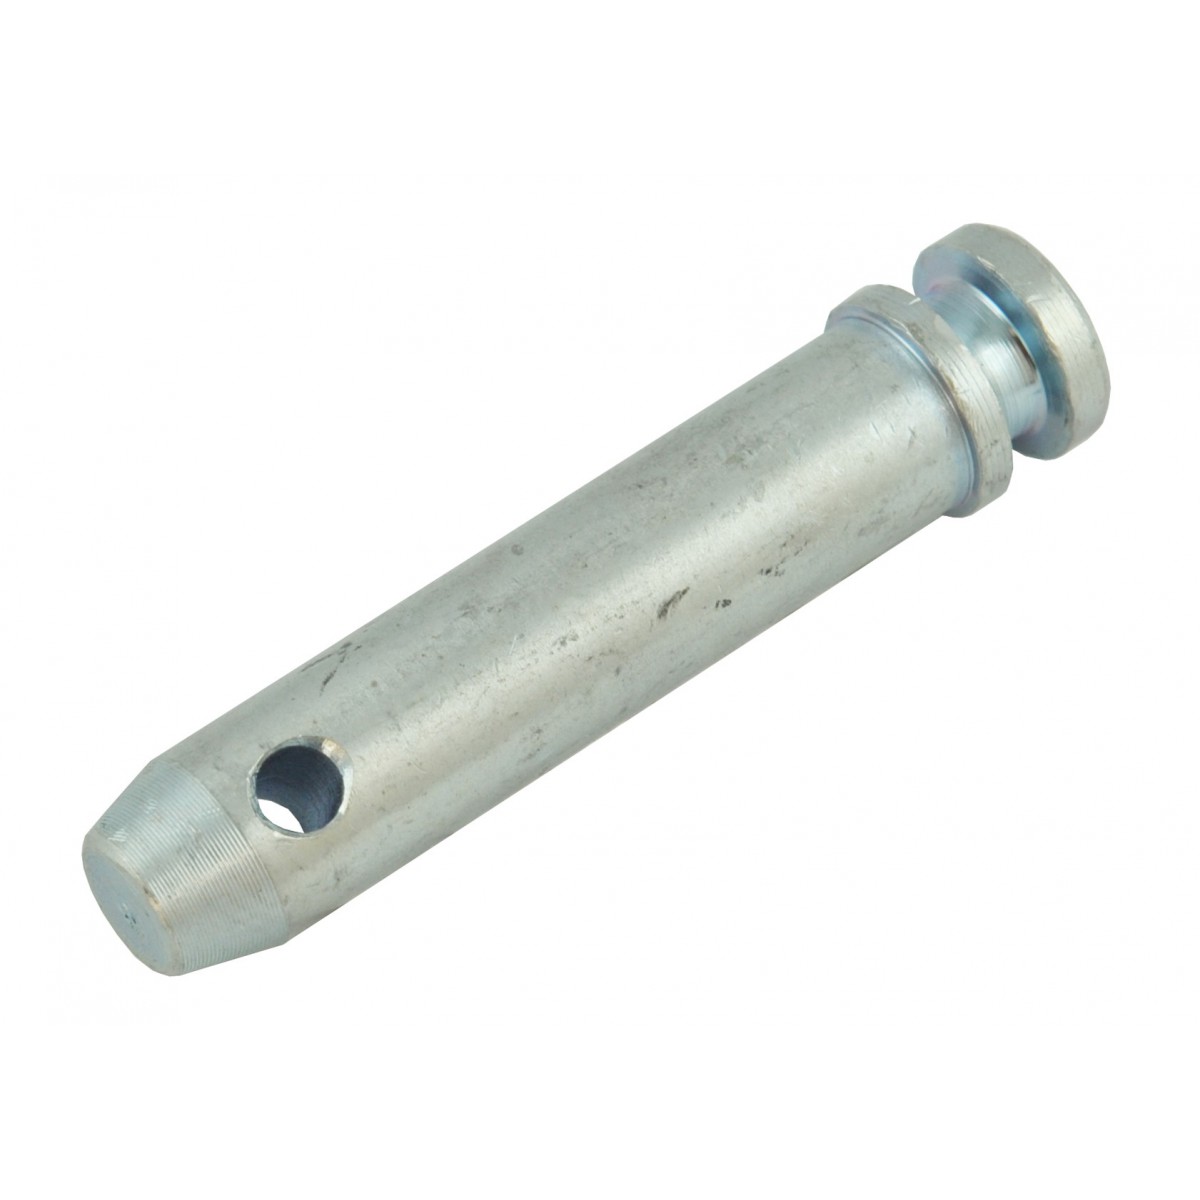 Pin KAT 1 22x114 mm